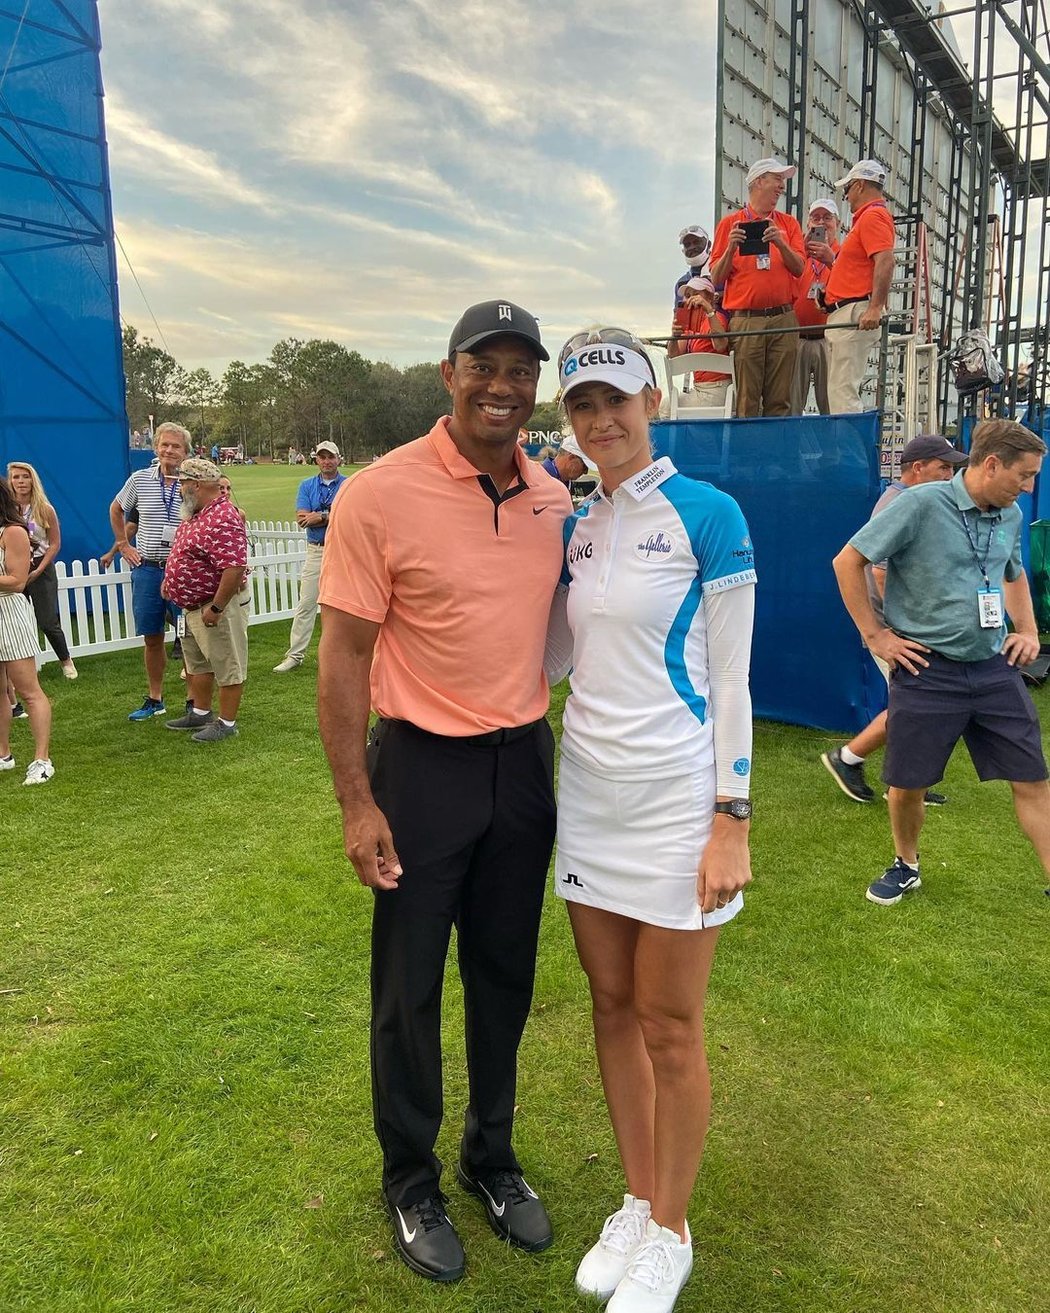 Nelly Kordová ulovila společnou fotografií s ikonou Tigerem Woodsem